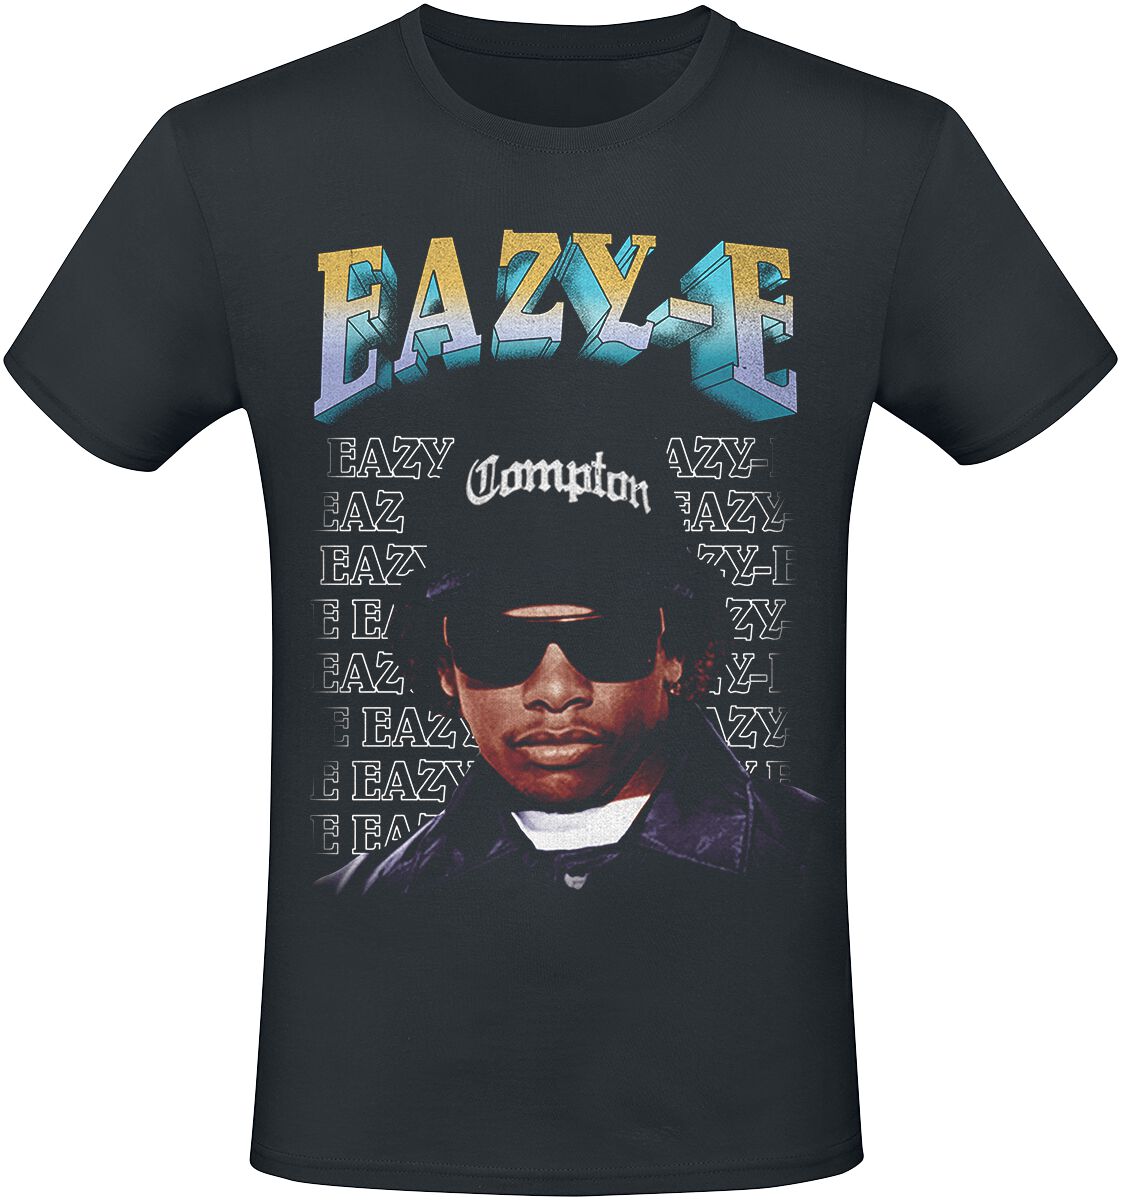 Eazy-E T-Shirt - Compton - S bis 3XL - für Männer - Größe XXL - schwarz  - Lizenziertes Merchandise!